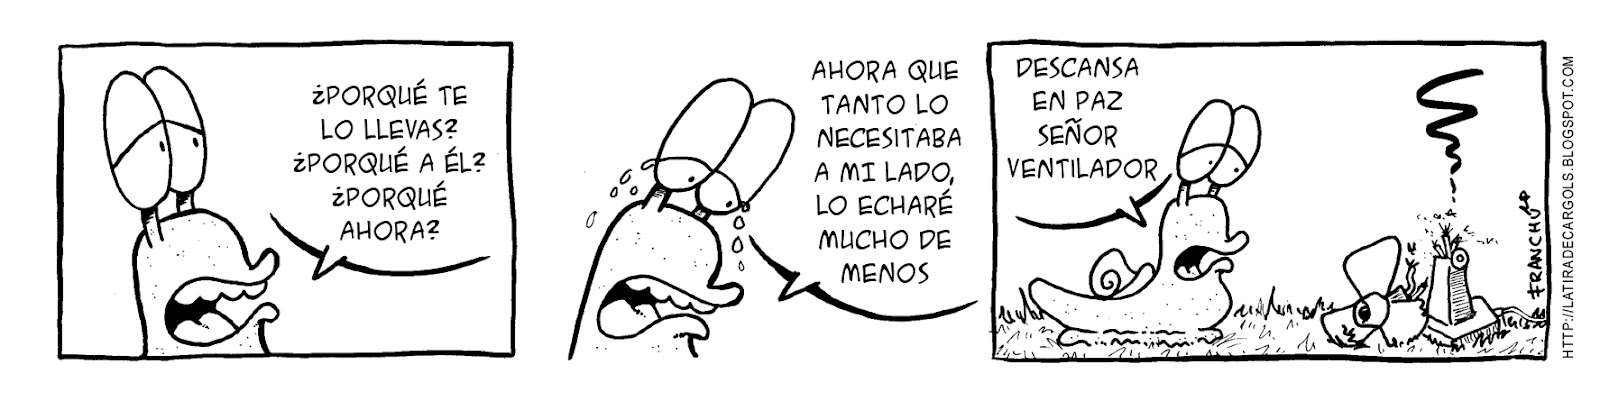 Tira comica 134 del webcomic Cargols del dibujante Franchu de Barcelona